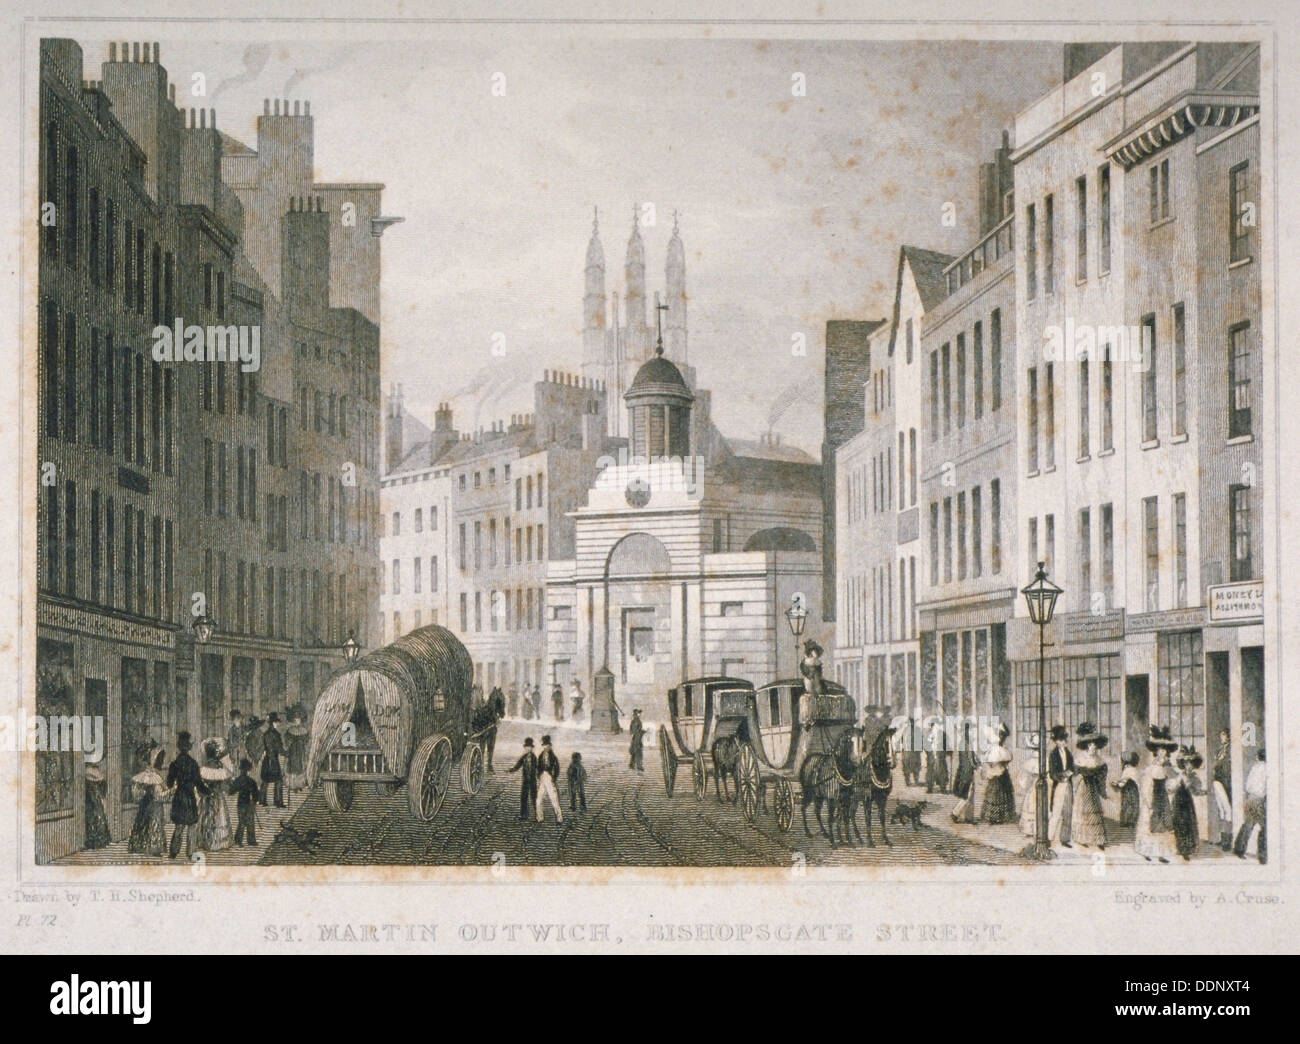 Kirche von St. Martin Outwich von Bishopsgate, City of London, 1830 betrachtet. Künstler: Cruse Stockfoto